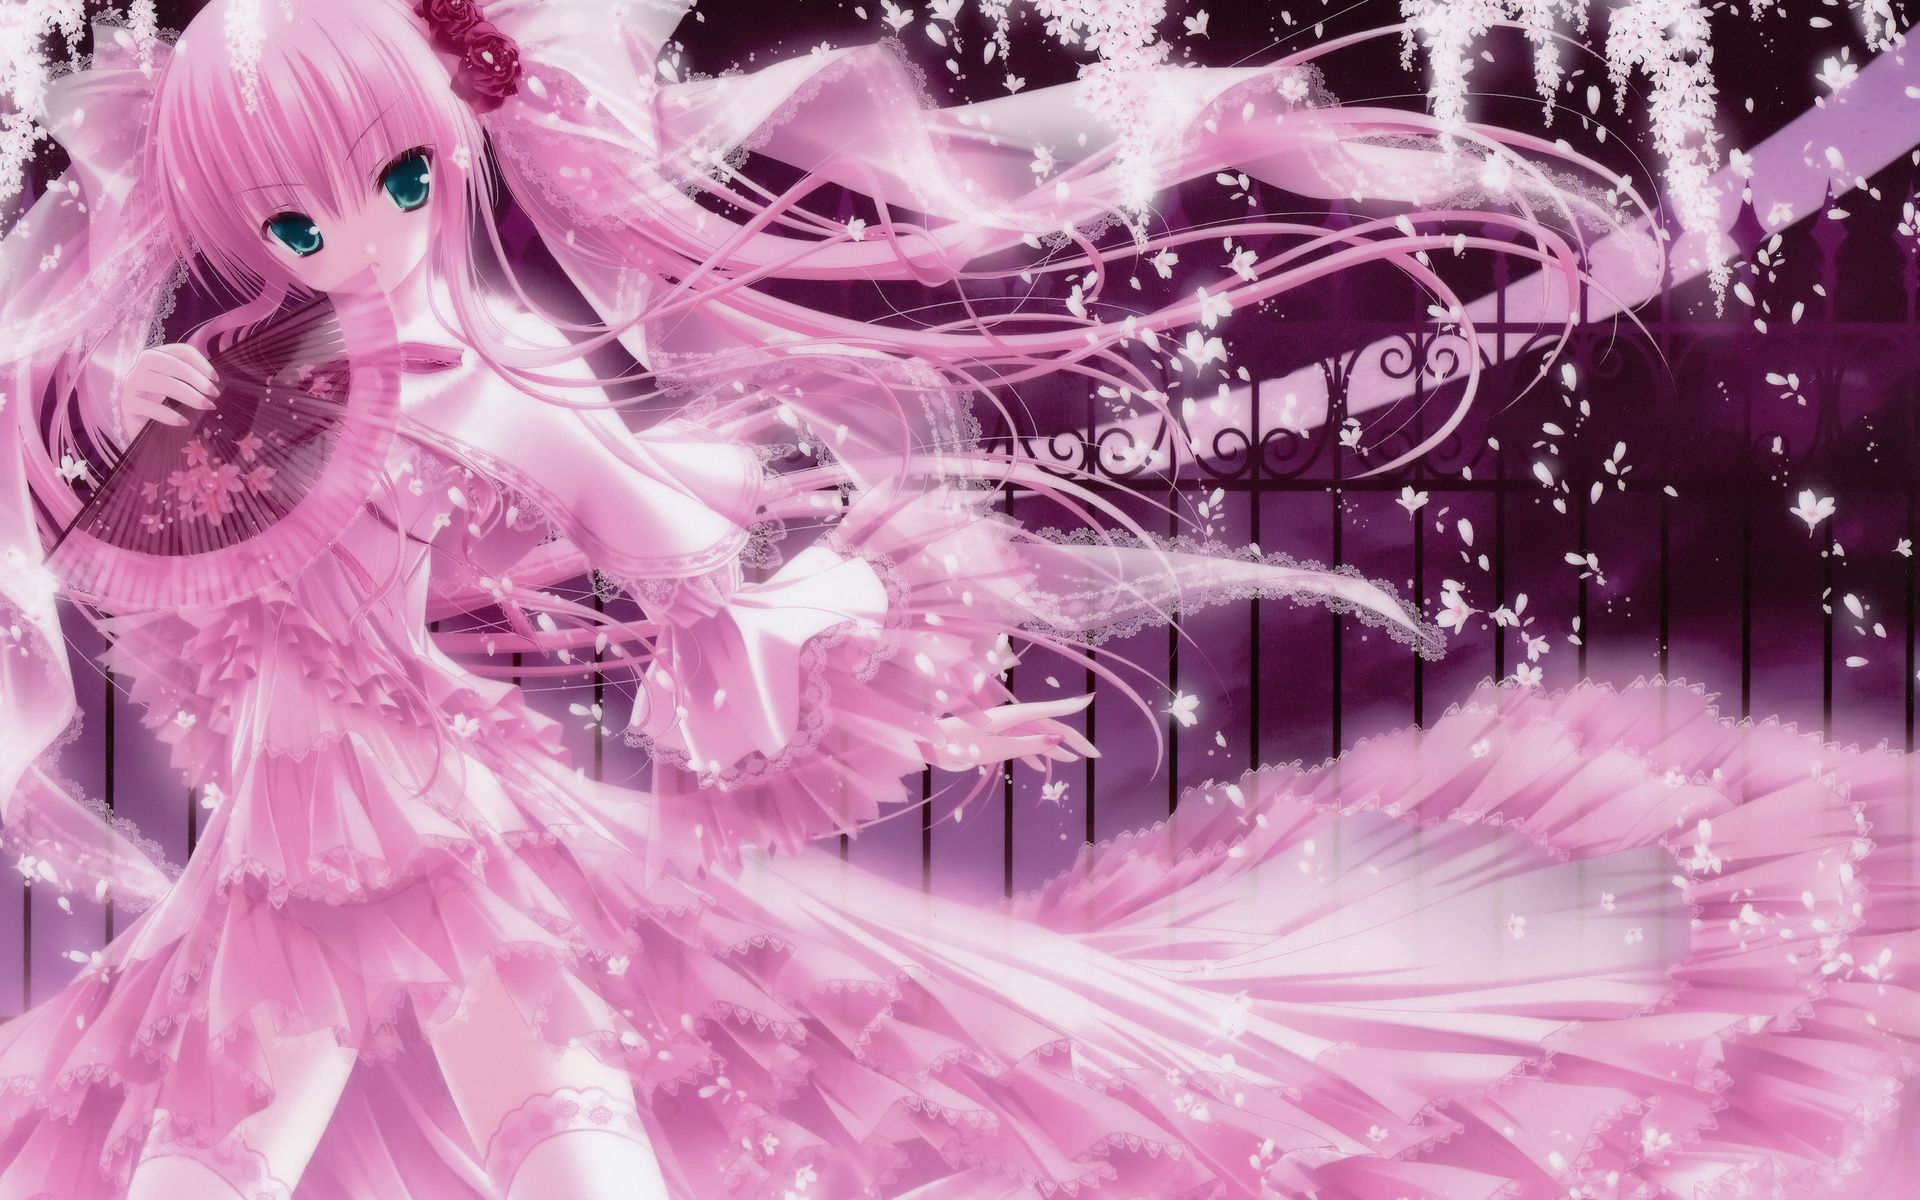 HD wallpaper KON anime pink  Wallpaper Flare